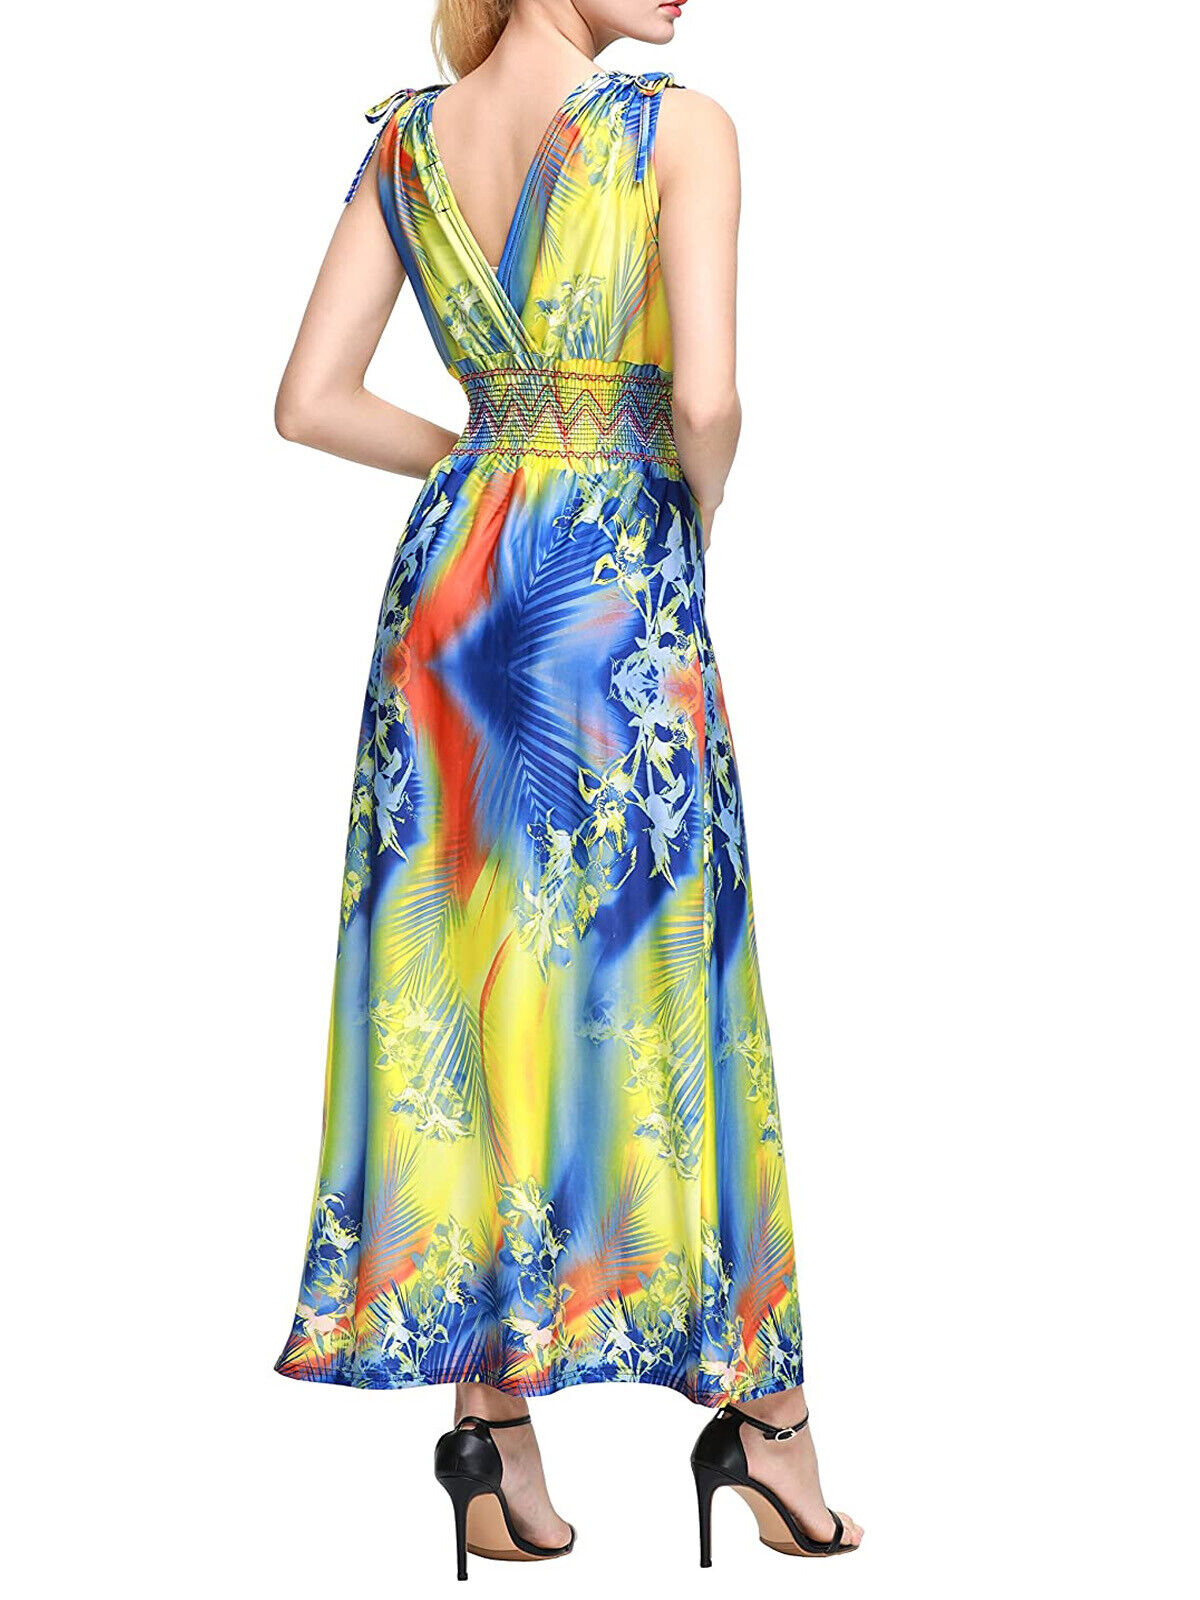 Wantdo Yellow Colourful Sleeveless Maxi Hawaiian Dress Sizes 22/24 or 26/28